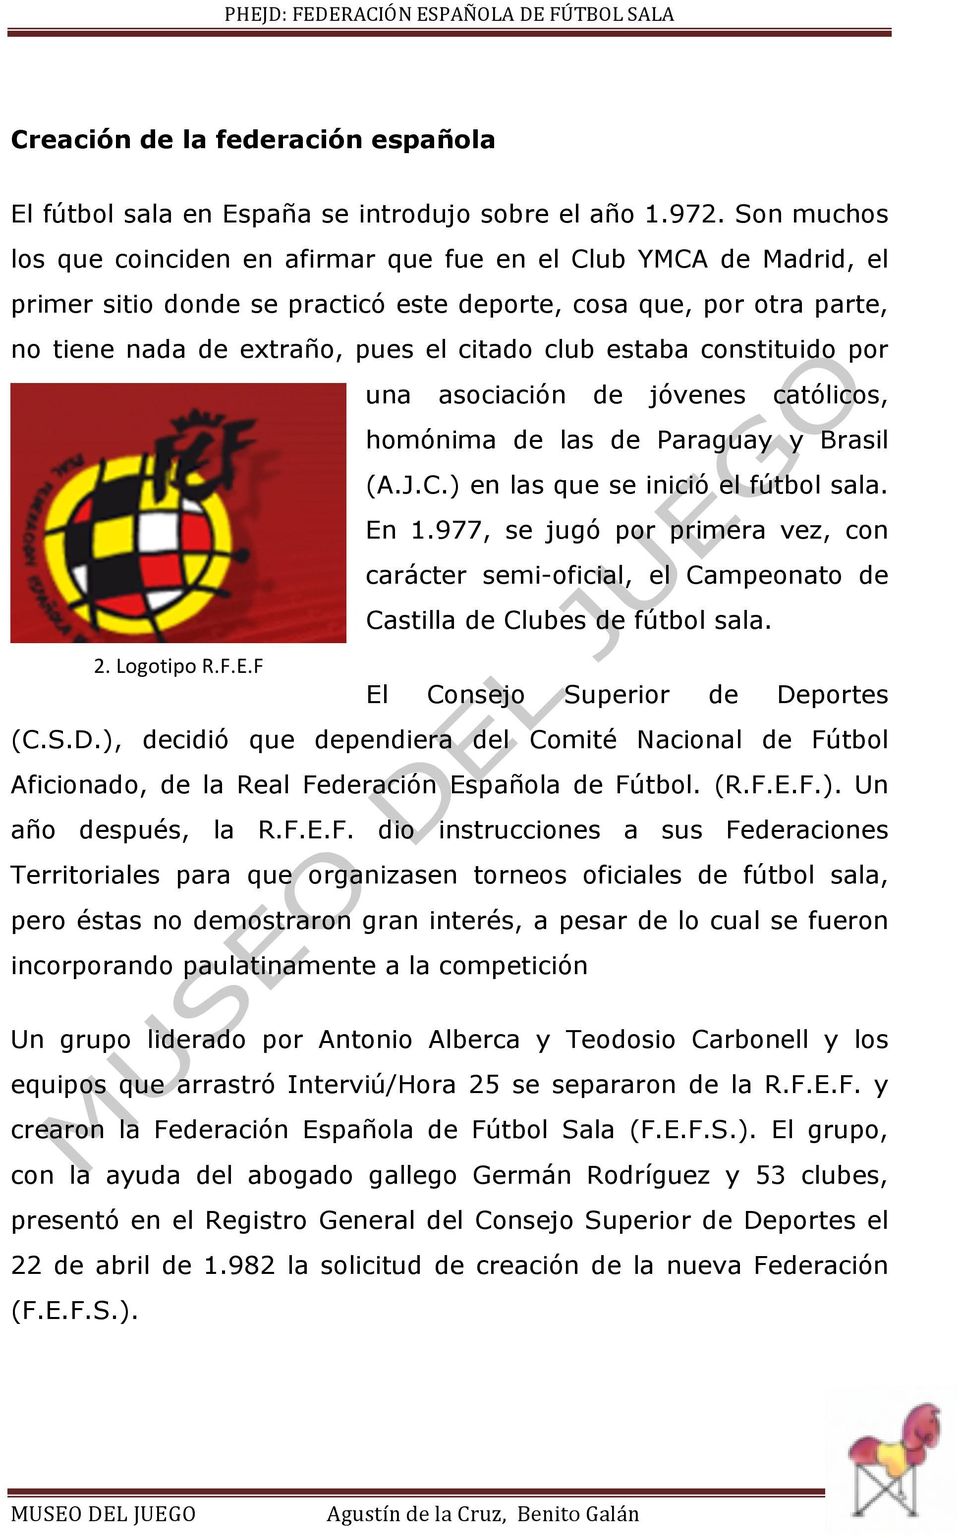 estaba constituido por una asociación de jóvenes católicos, homónima de las de Paraguay y Brasil (A.J.C.) en las que se inició el fútbol sala. En 1.